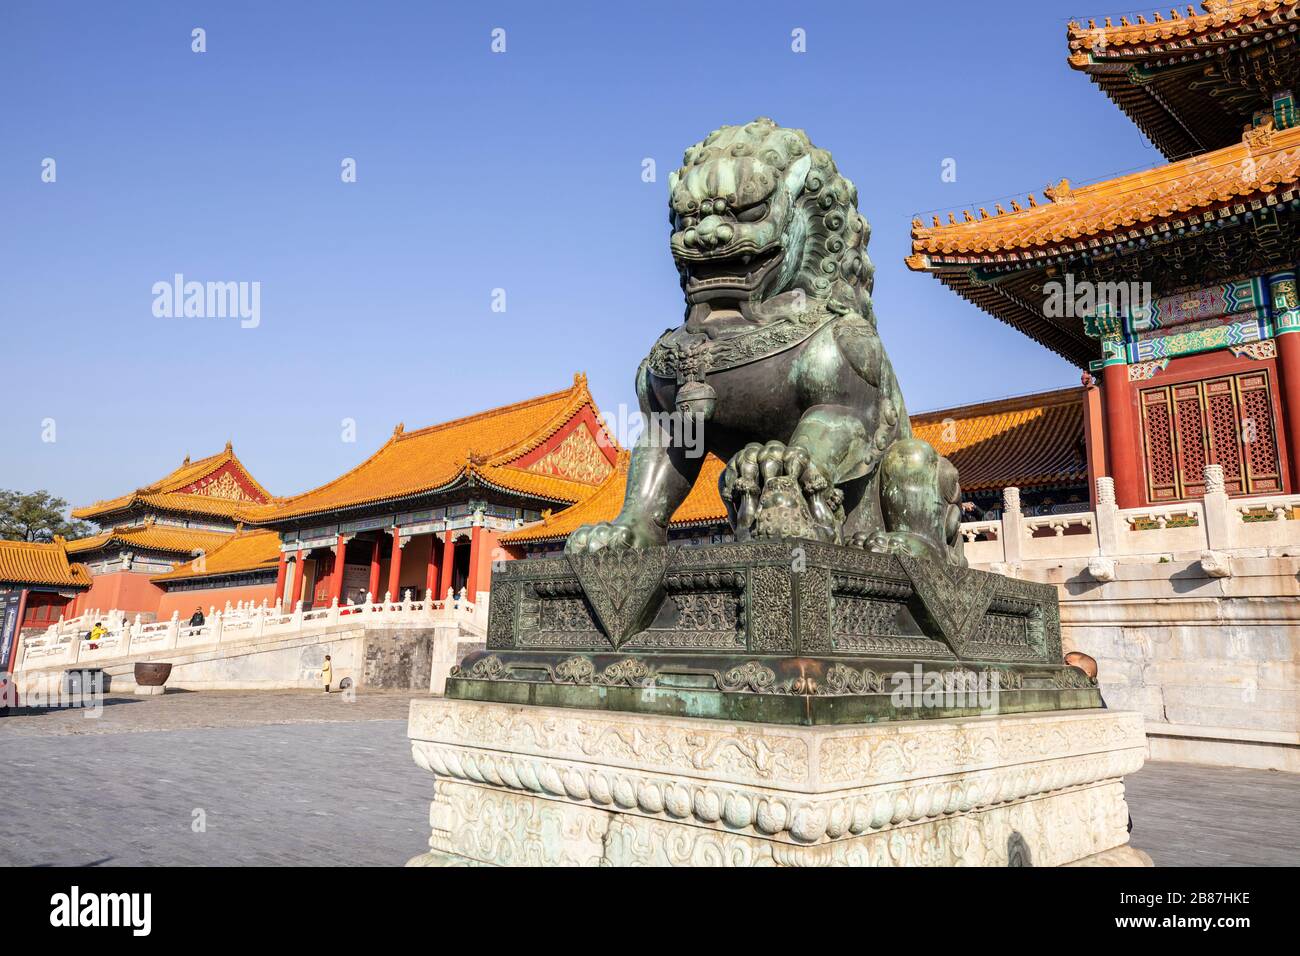 Verbotene Stadt in Peking, China Stockfoto